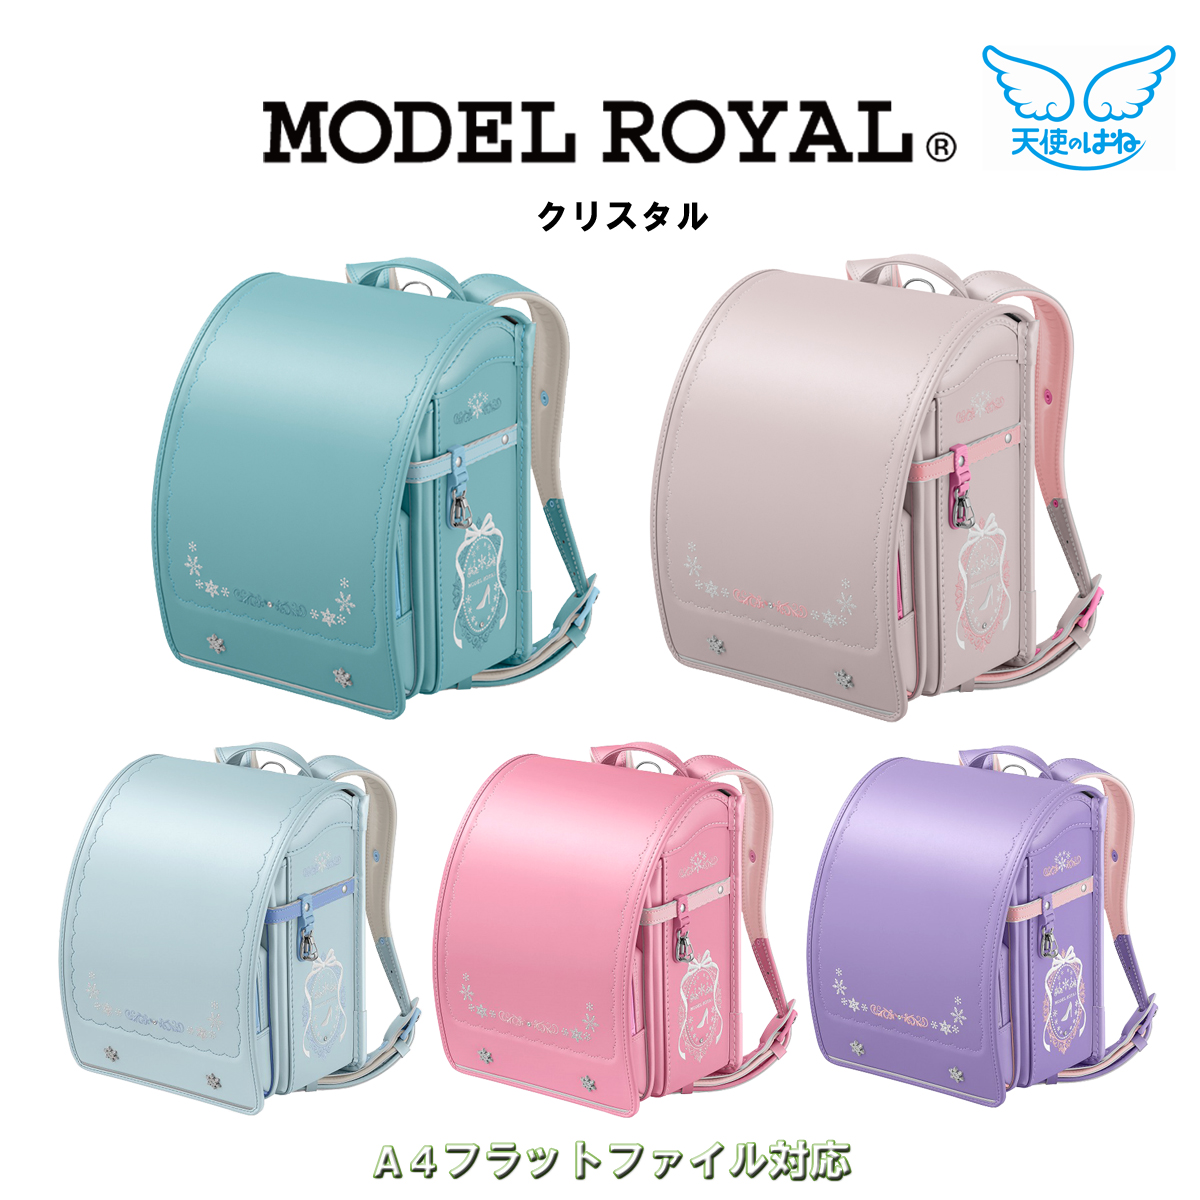 sei van ранец 2025 отчетный год crystal модель Royal MODEL ROYAL MR22G сделано в Японии новый входить . входить . праздник девочка девушки учеба . type популярный серии 2025 отчетный год 